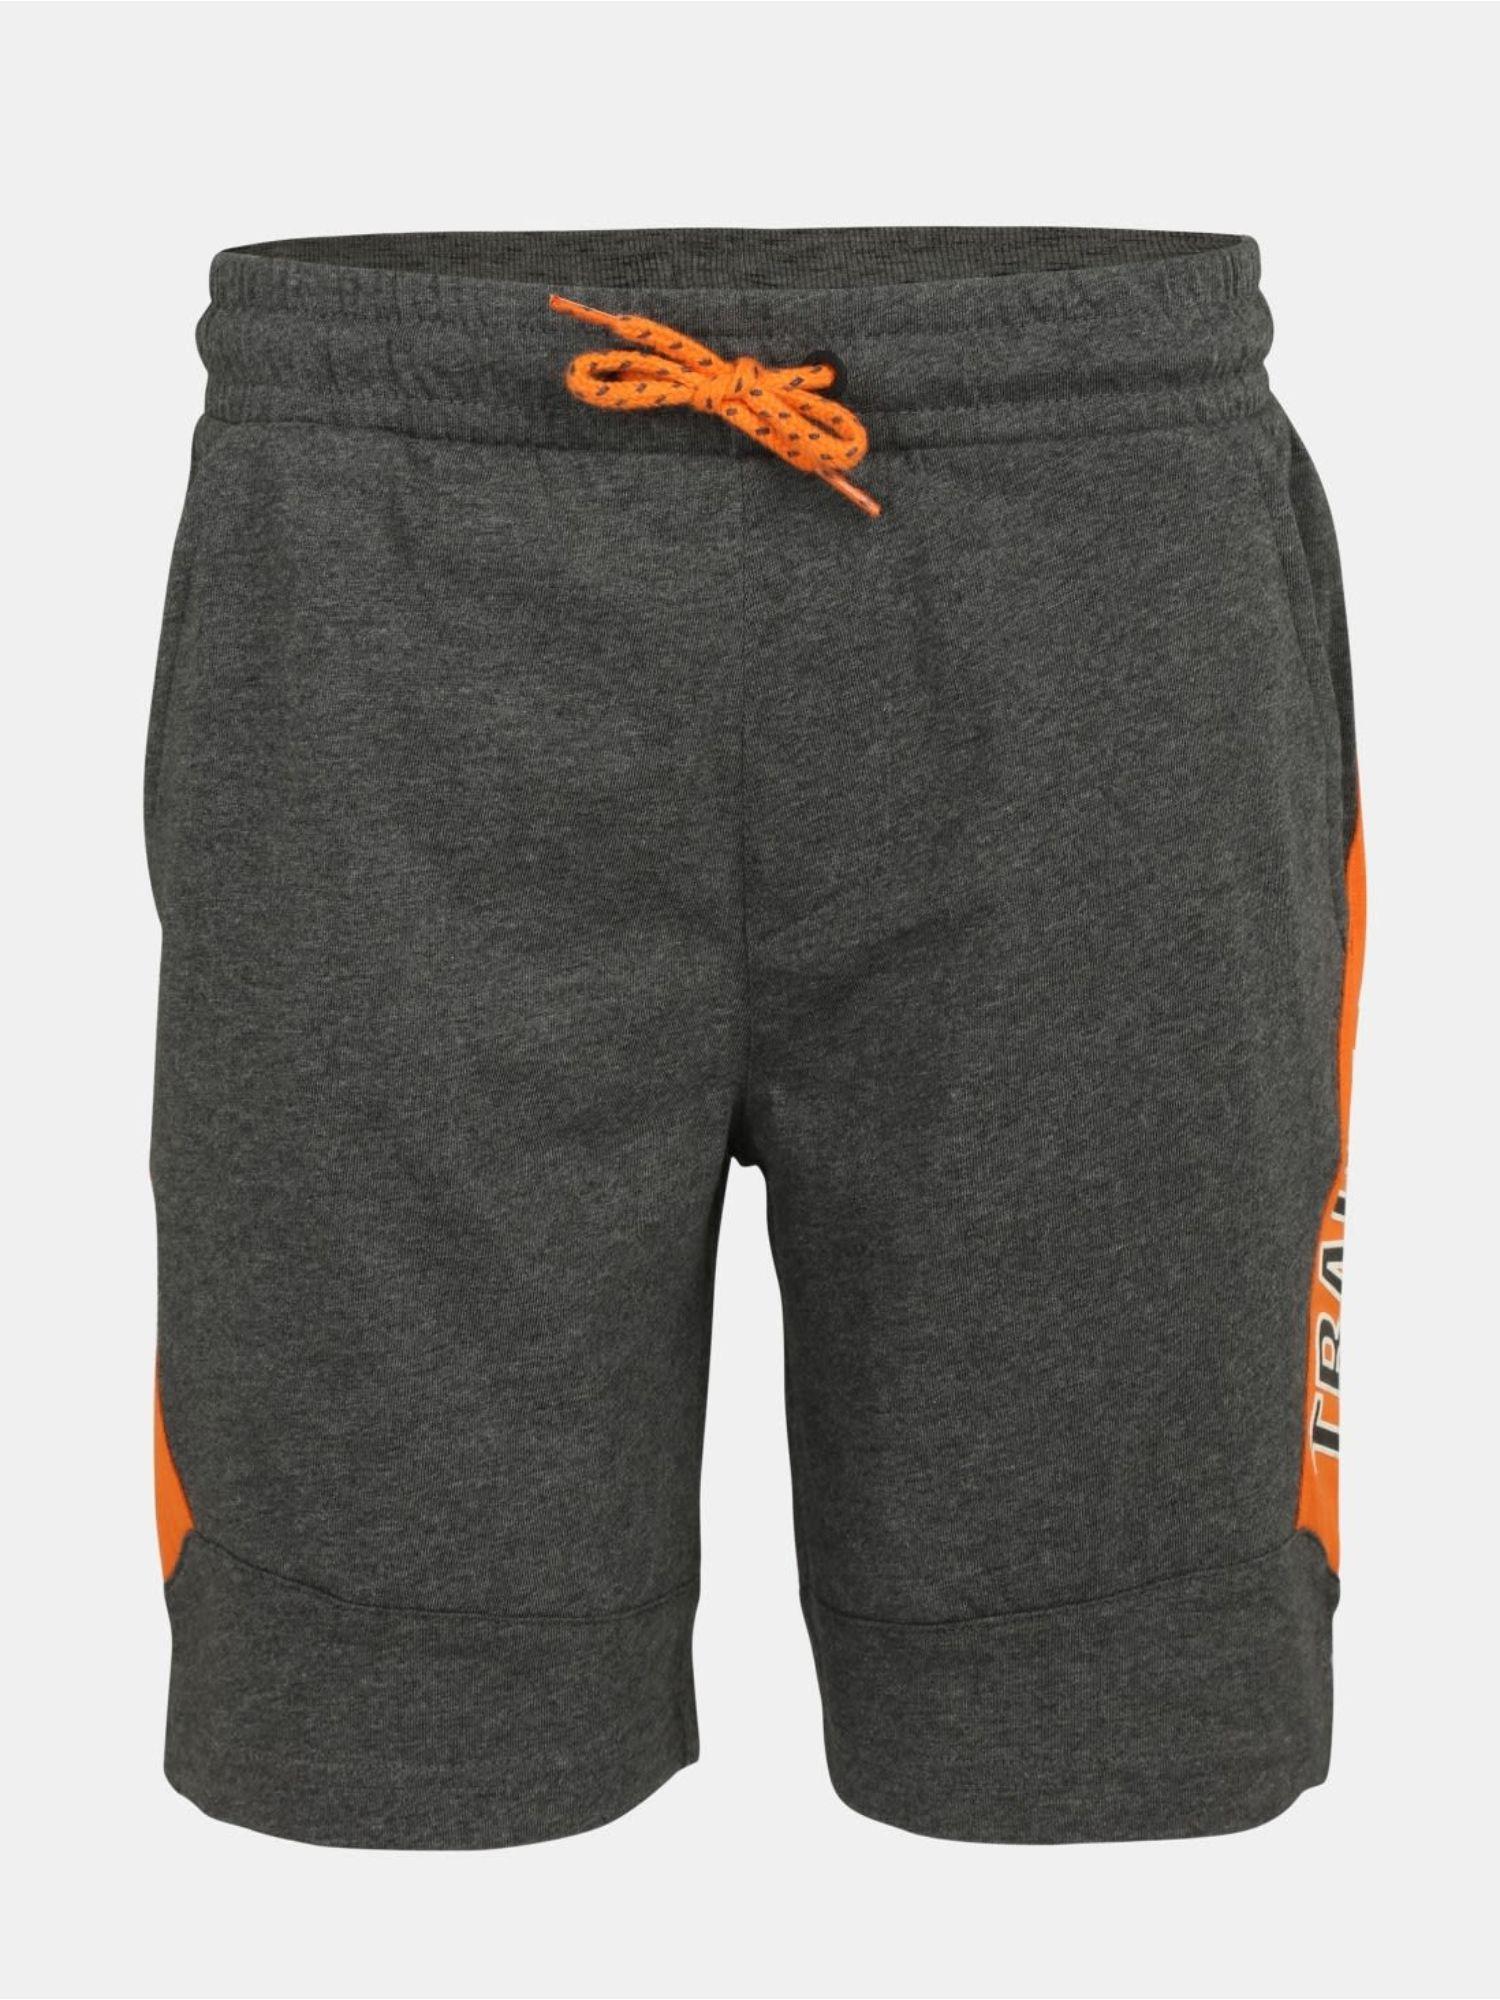 charcoal melange boys shorts - style number - (ab17)